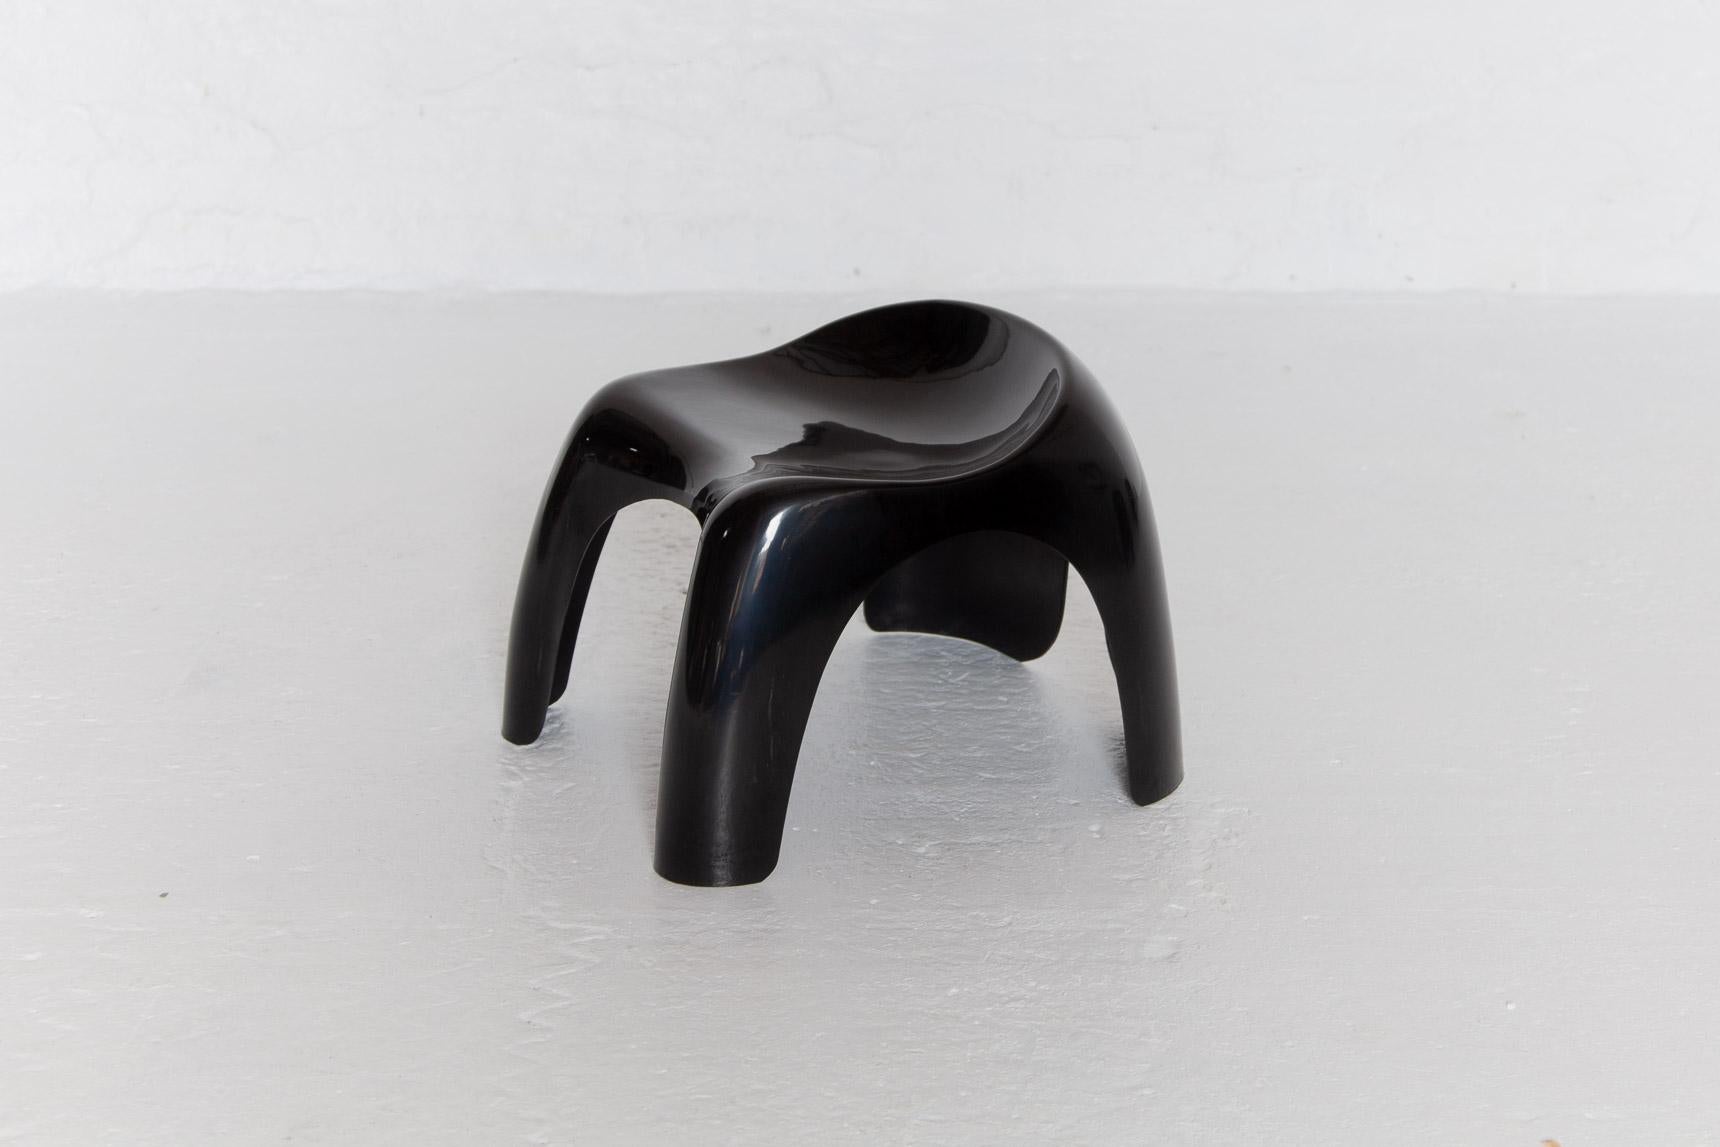 Satz von vier Artemide Efebo Efebino Sitzmöbeln, entworfen von Stacy Duke. Wunderschön skulptural gestaltete Kinderhocker aus schwarzem Kunststoff, auch für Erwachsene geeignet, sehr stabil, gestempeltes Label Artemide, Italien.

Abmessungen: